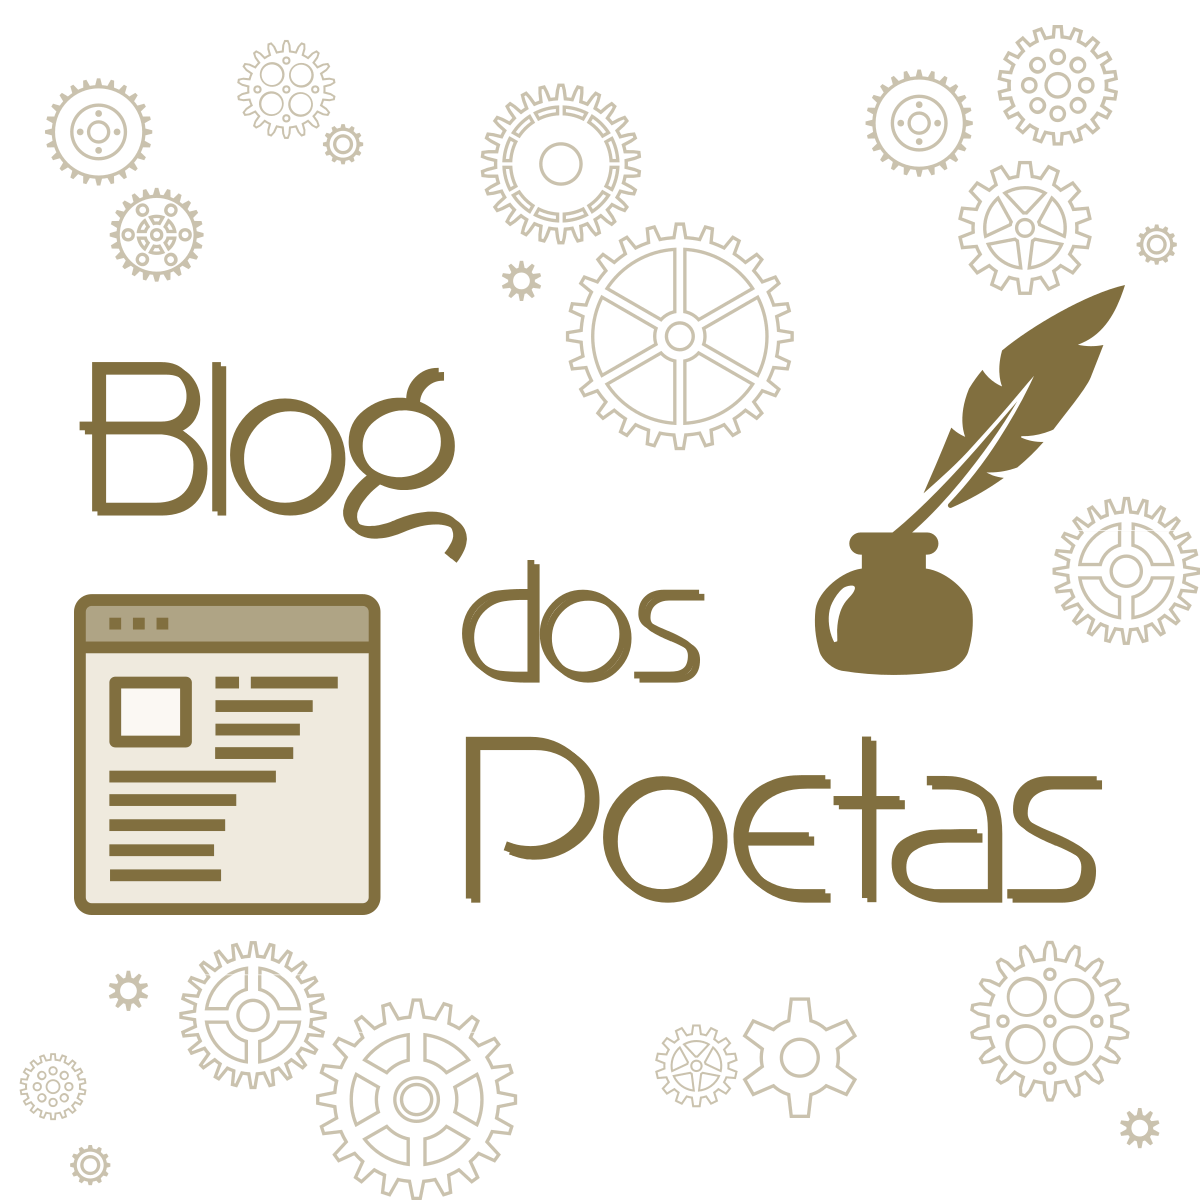 (c) Blogdospoetas.com.br